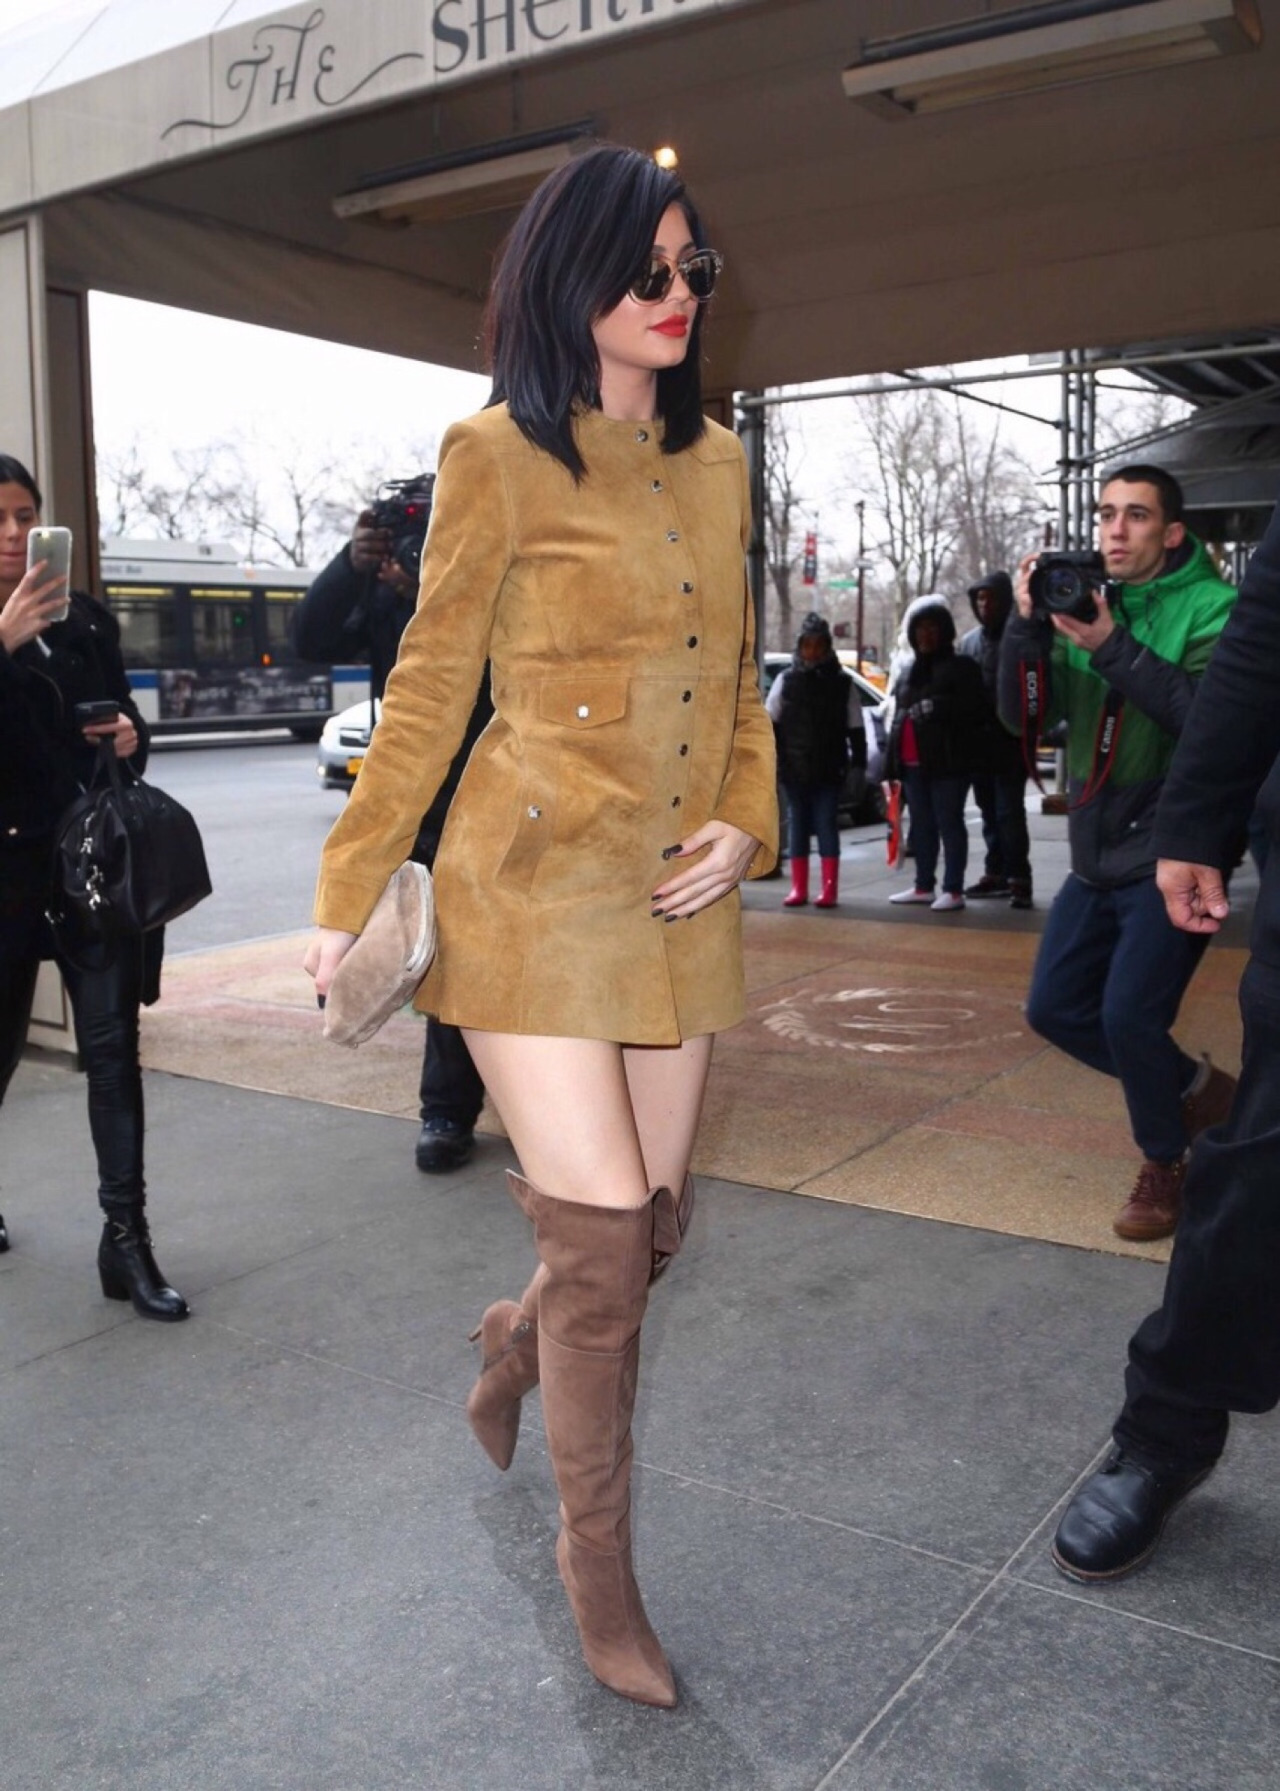 I stor skala uendelig Rusland 1 Kylie Jenner's Isabel Marant Suede Button Jacket Dress and Schutz Brown  Over the Knee Boots